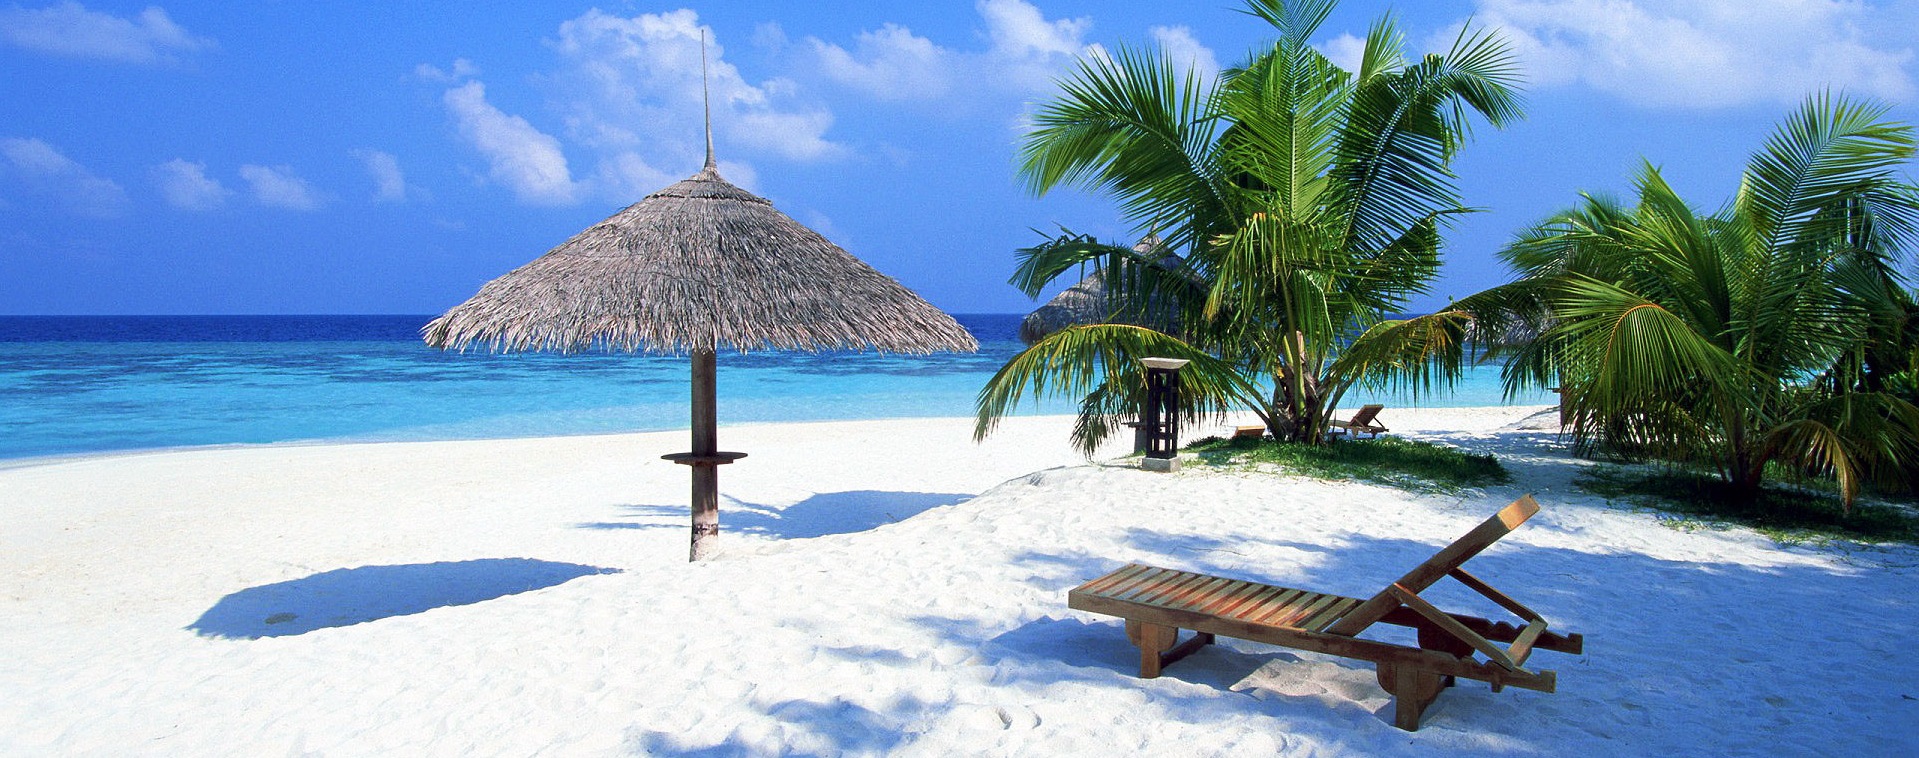 ovest sfondo hd,vacanza,caraibico,palma,mare,spiaggia